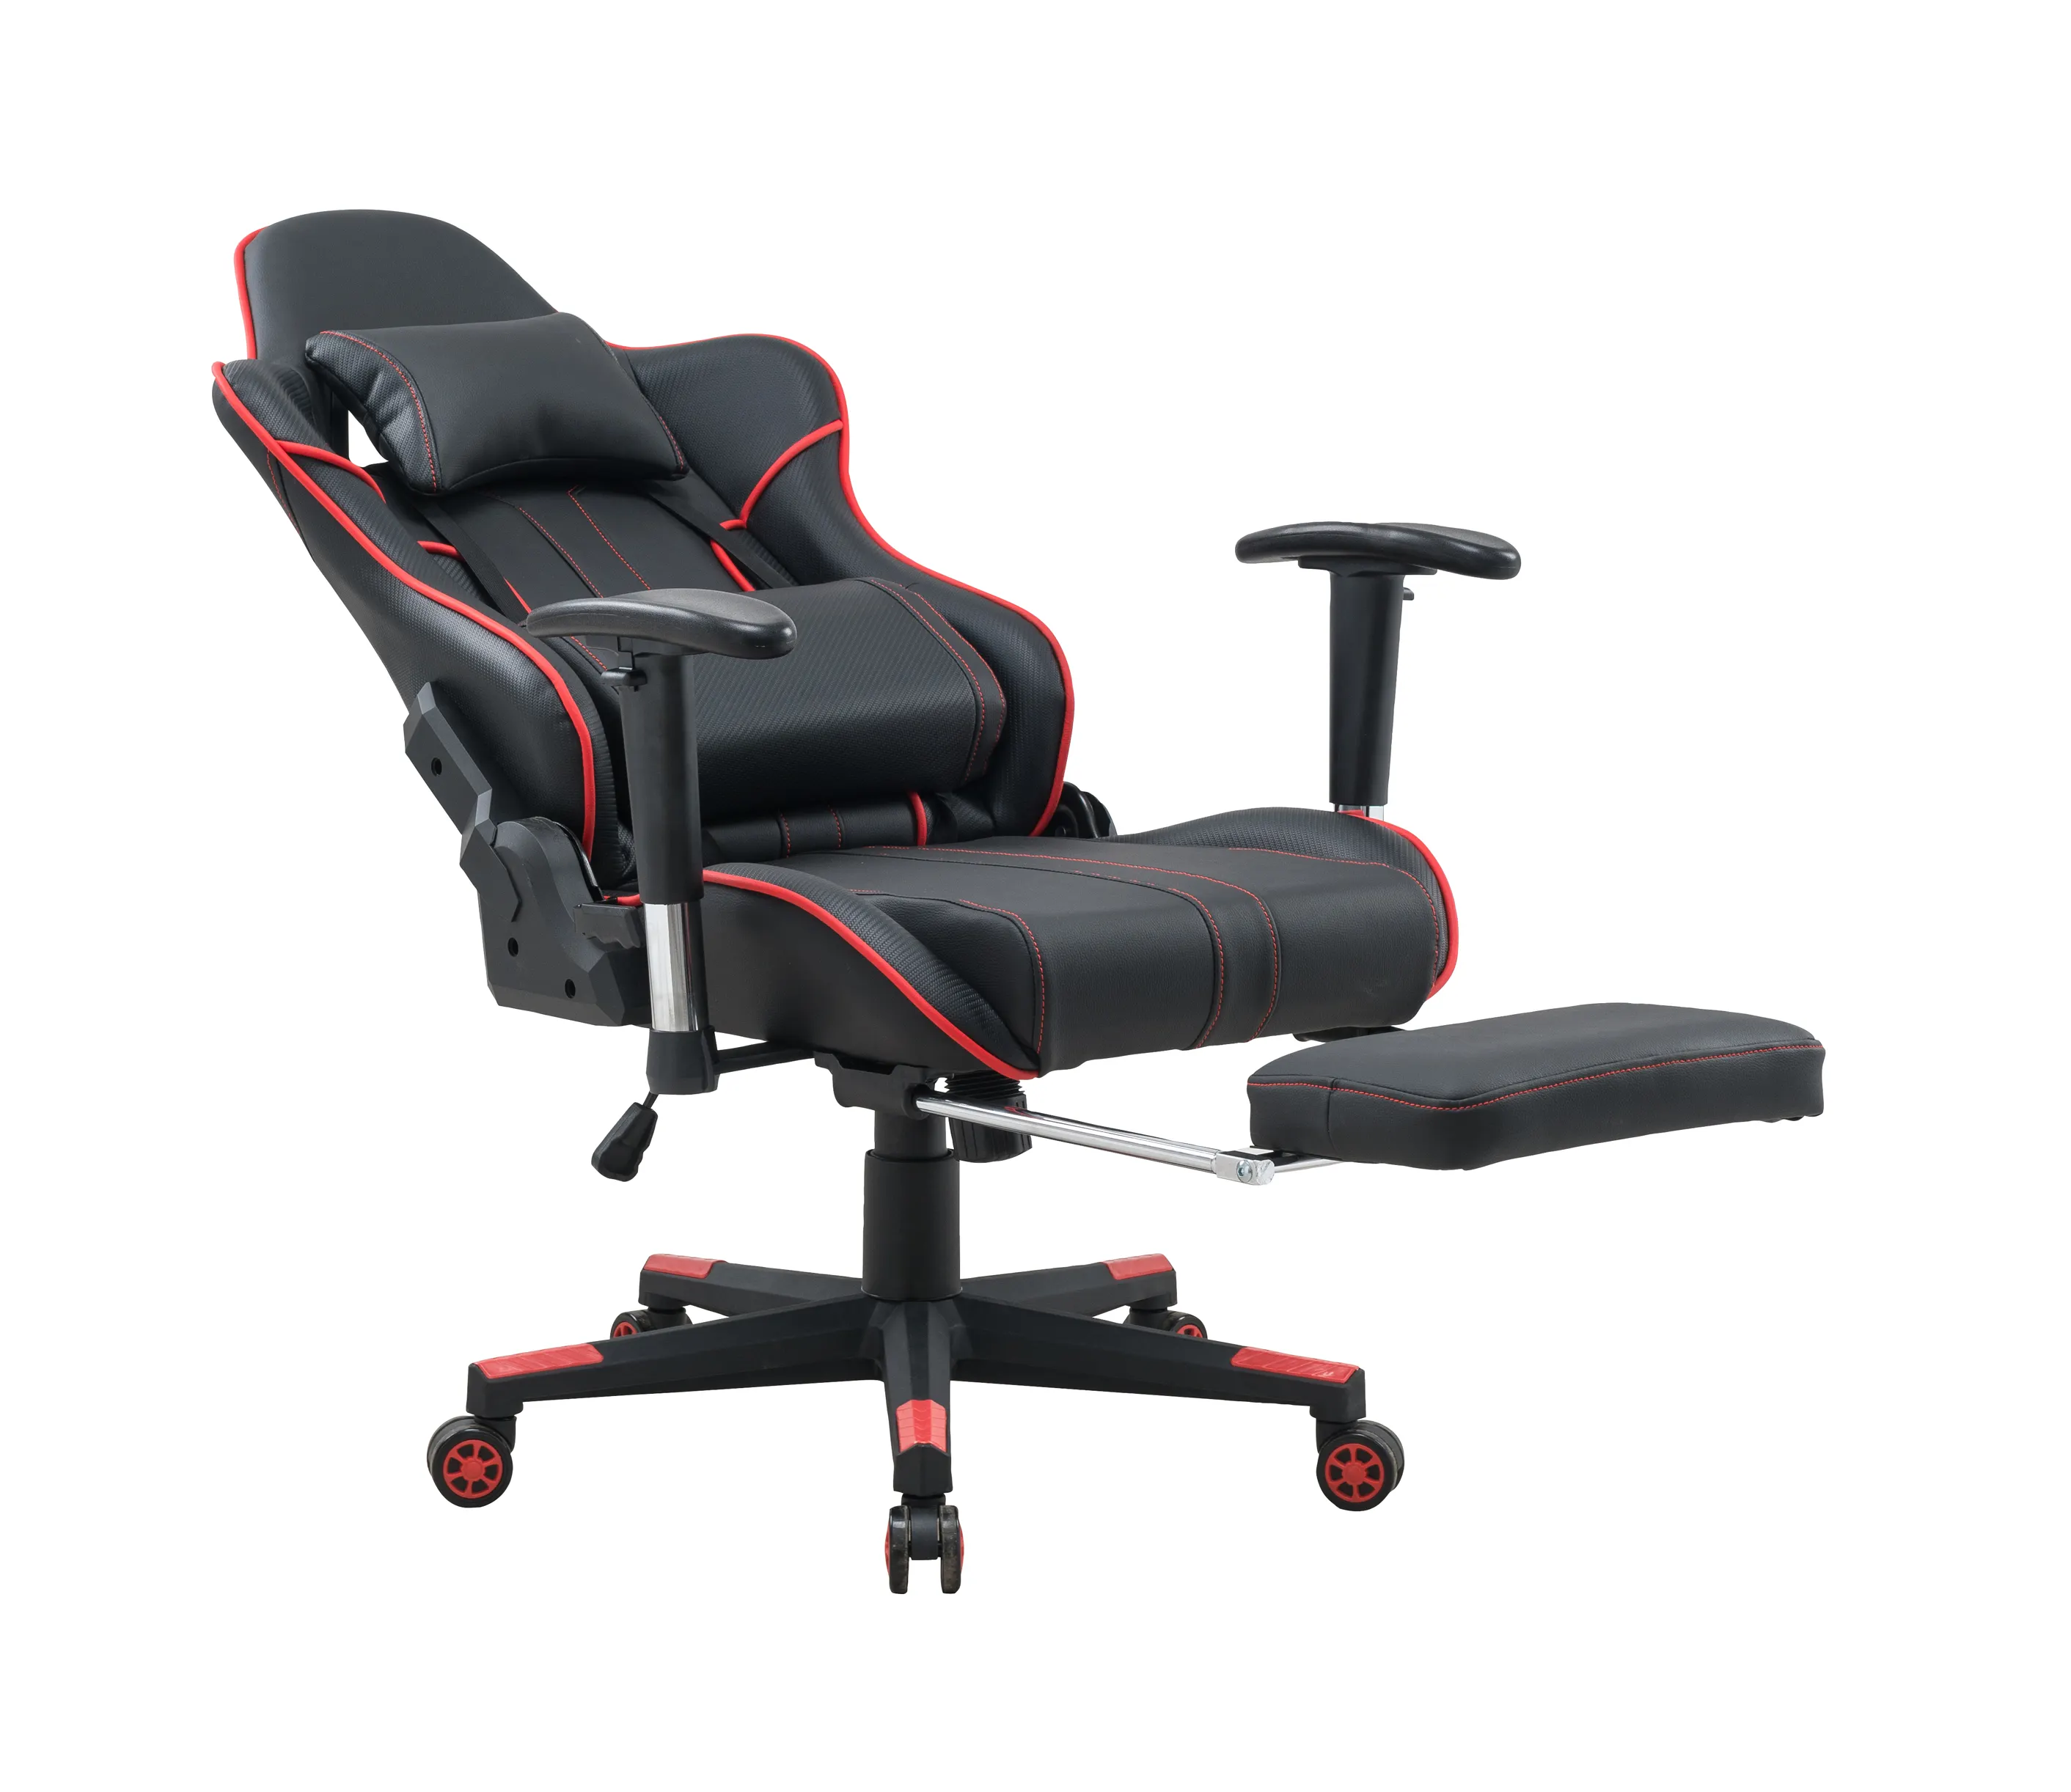 2022 nouvelles chaises de jeu planche de bois chaise en cuir ergonomique inclinable avec repose-pieds, chaise de jeu de Style course,